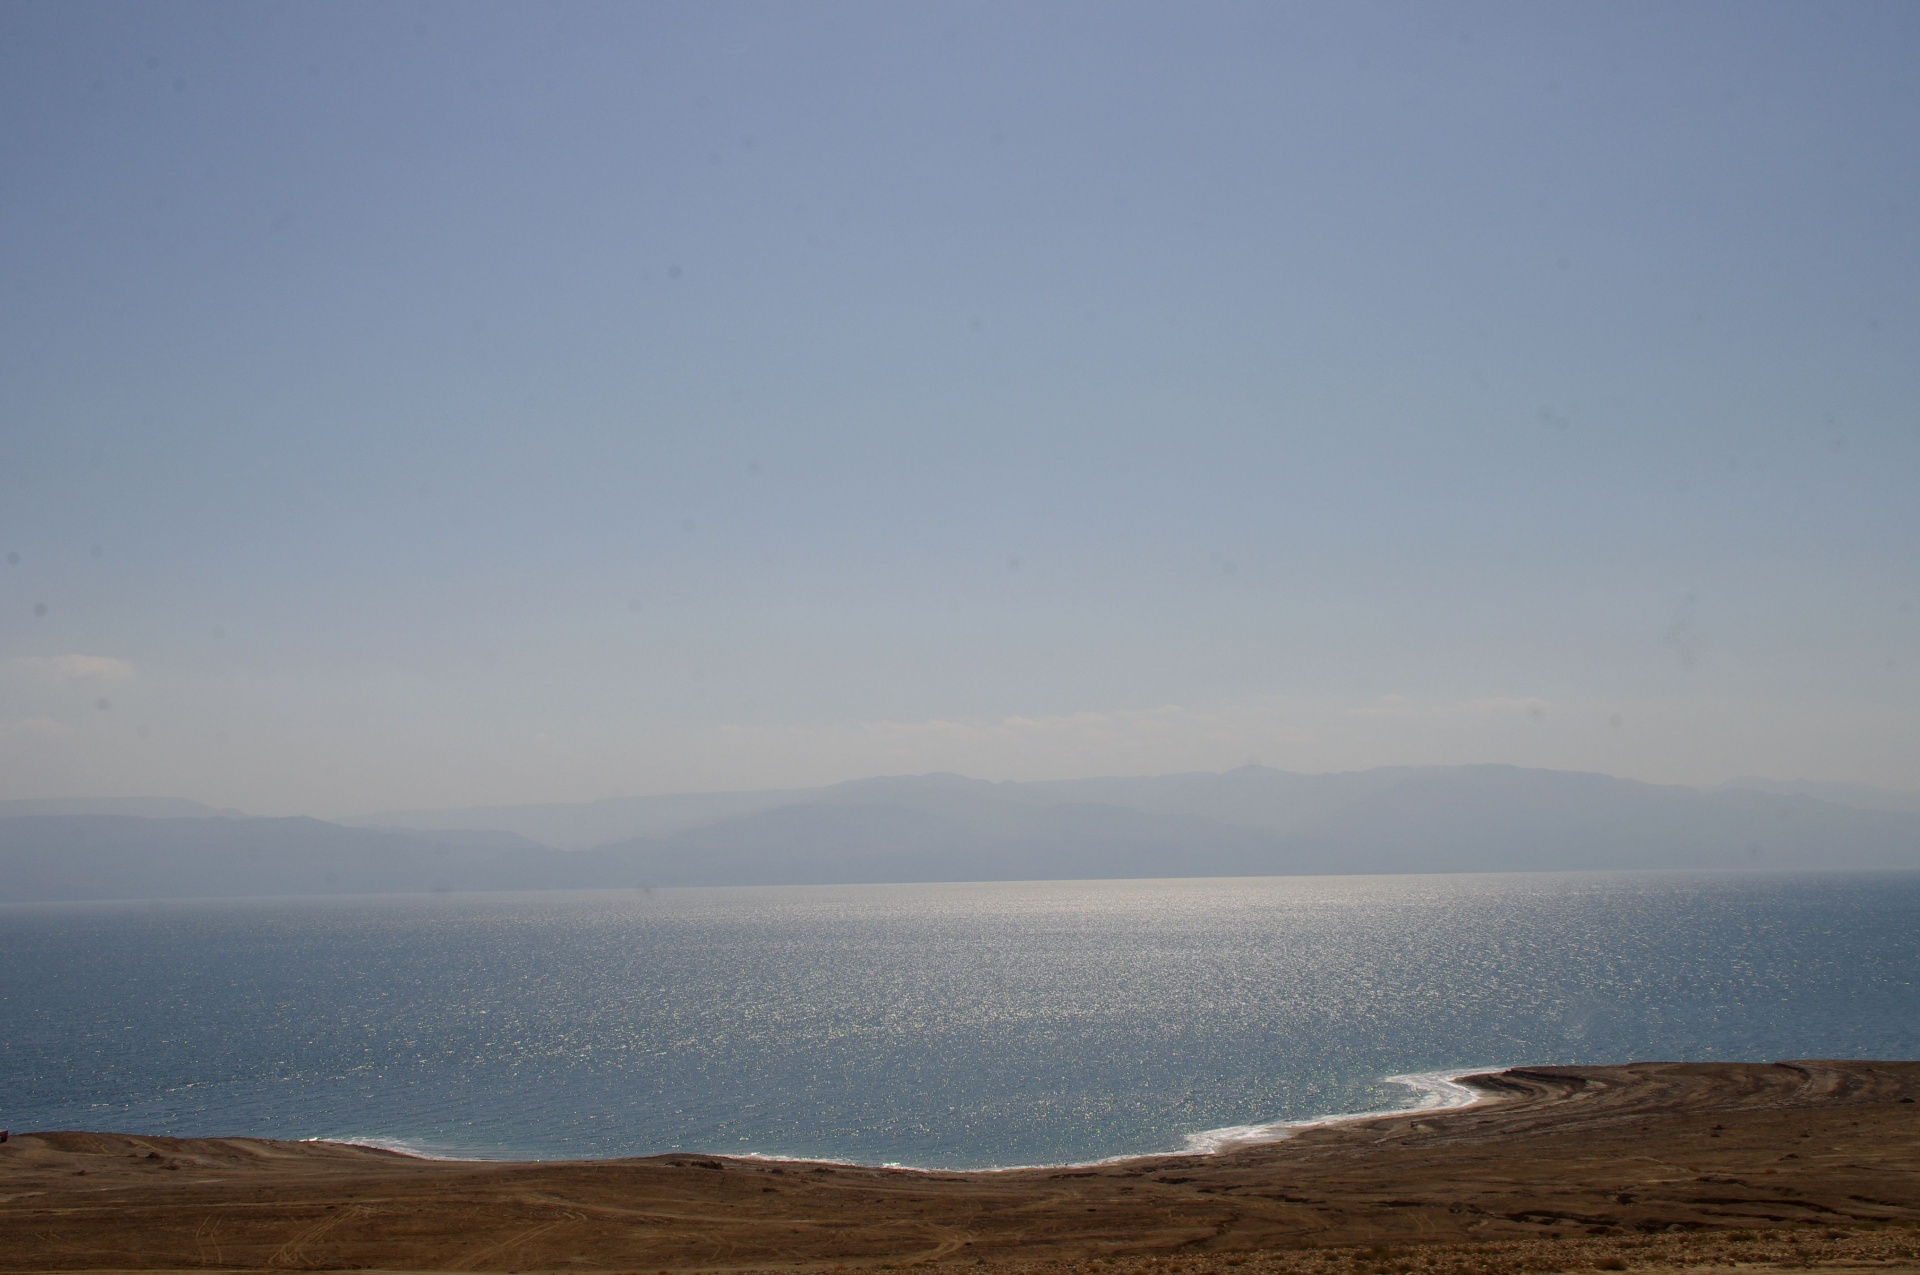 Dreamy View Of Dead Sea Landscape